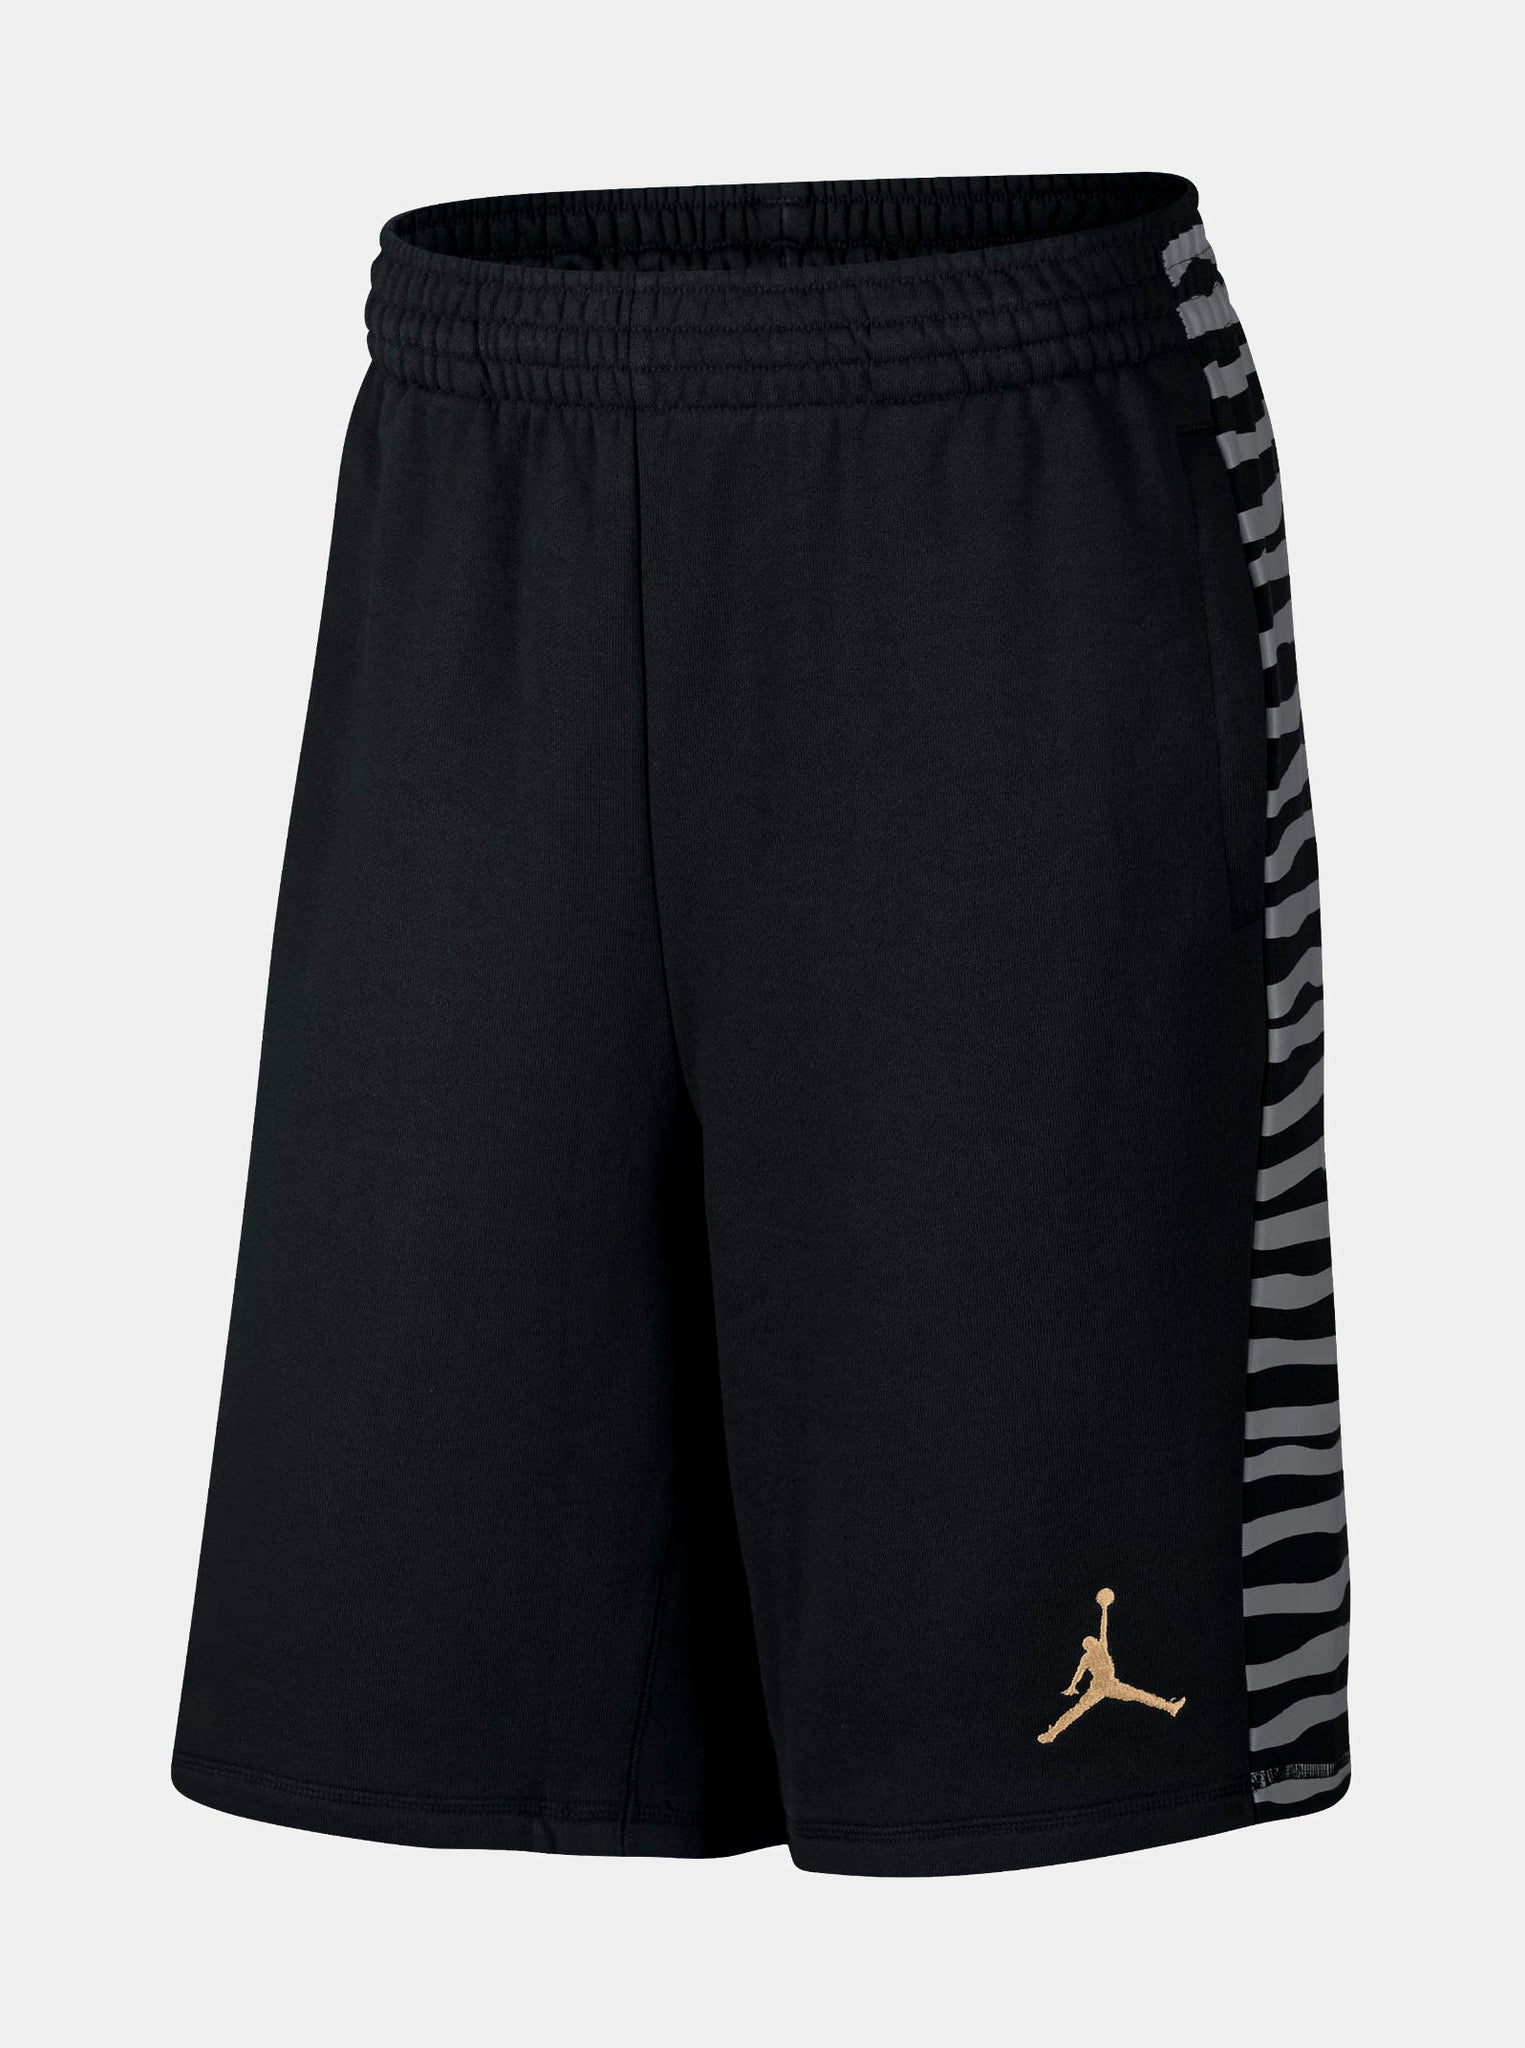 Jordan Air Jordan 10 Fleece Mens Shorts 